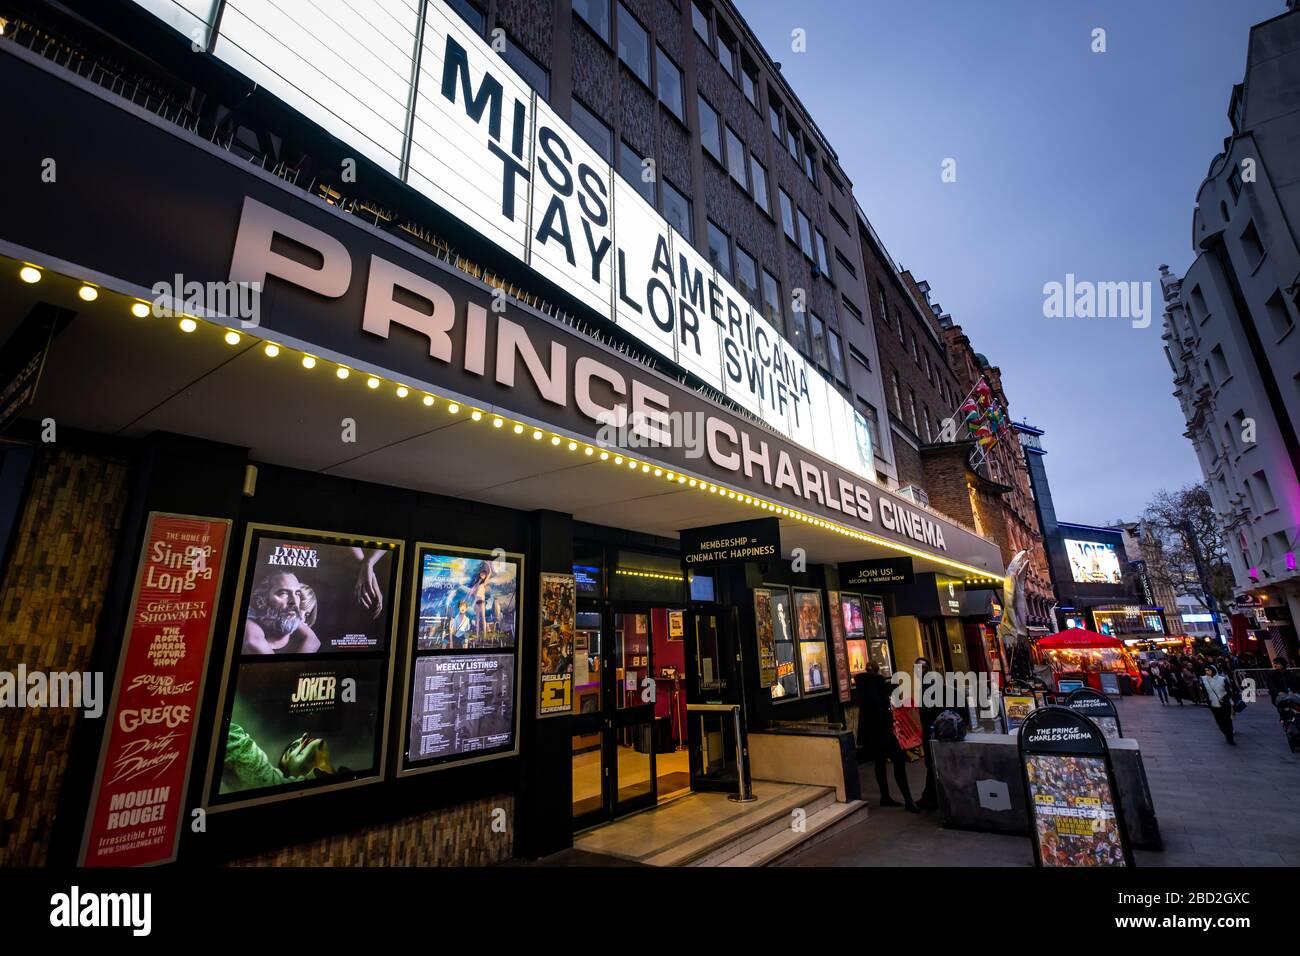 LONDON - JANUAR 2020: Prince Charles Theatre am Leicester Square in Soho. Ein unabhängiges Theater, das berühmt ist, um alternativen und kultischen klassischen Film zu zeigen Stockfoto